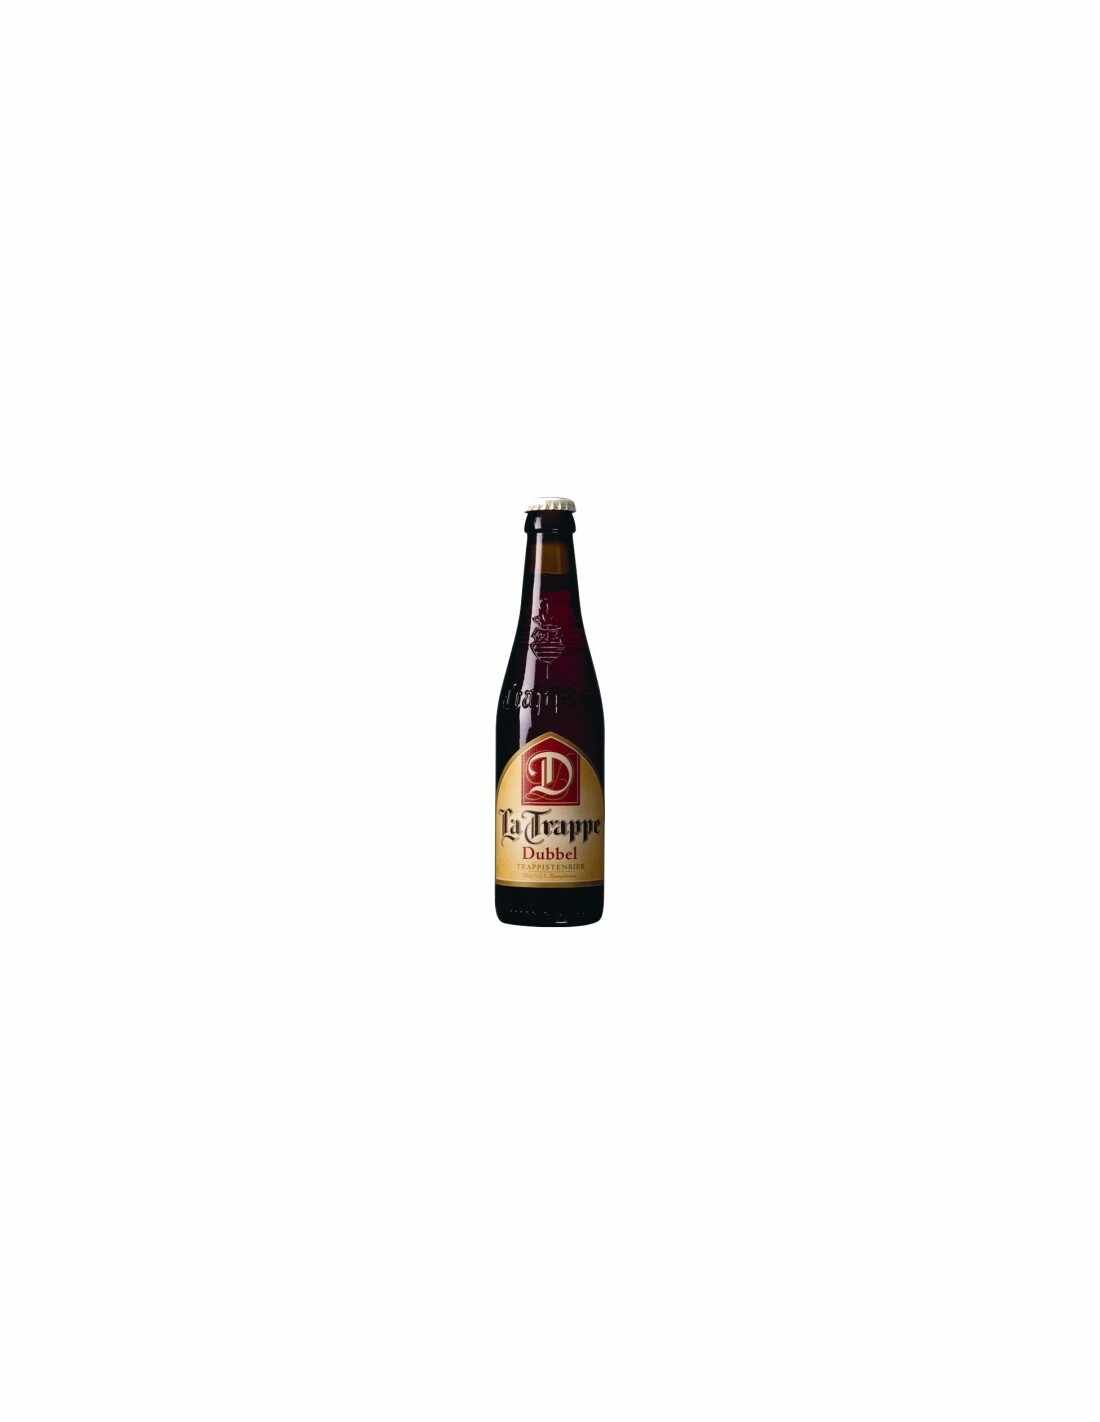 Bere bruna, filtrata La Trappe, 6.5% alc., 0.75L, Belgia